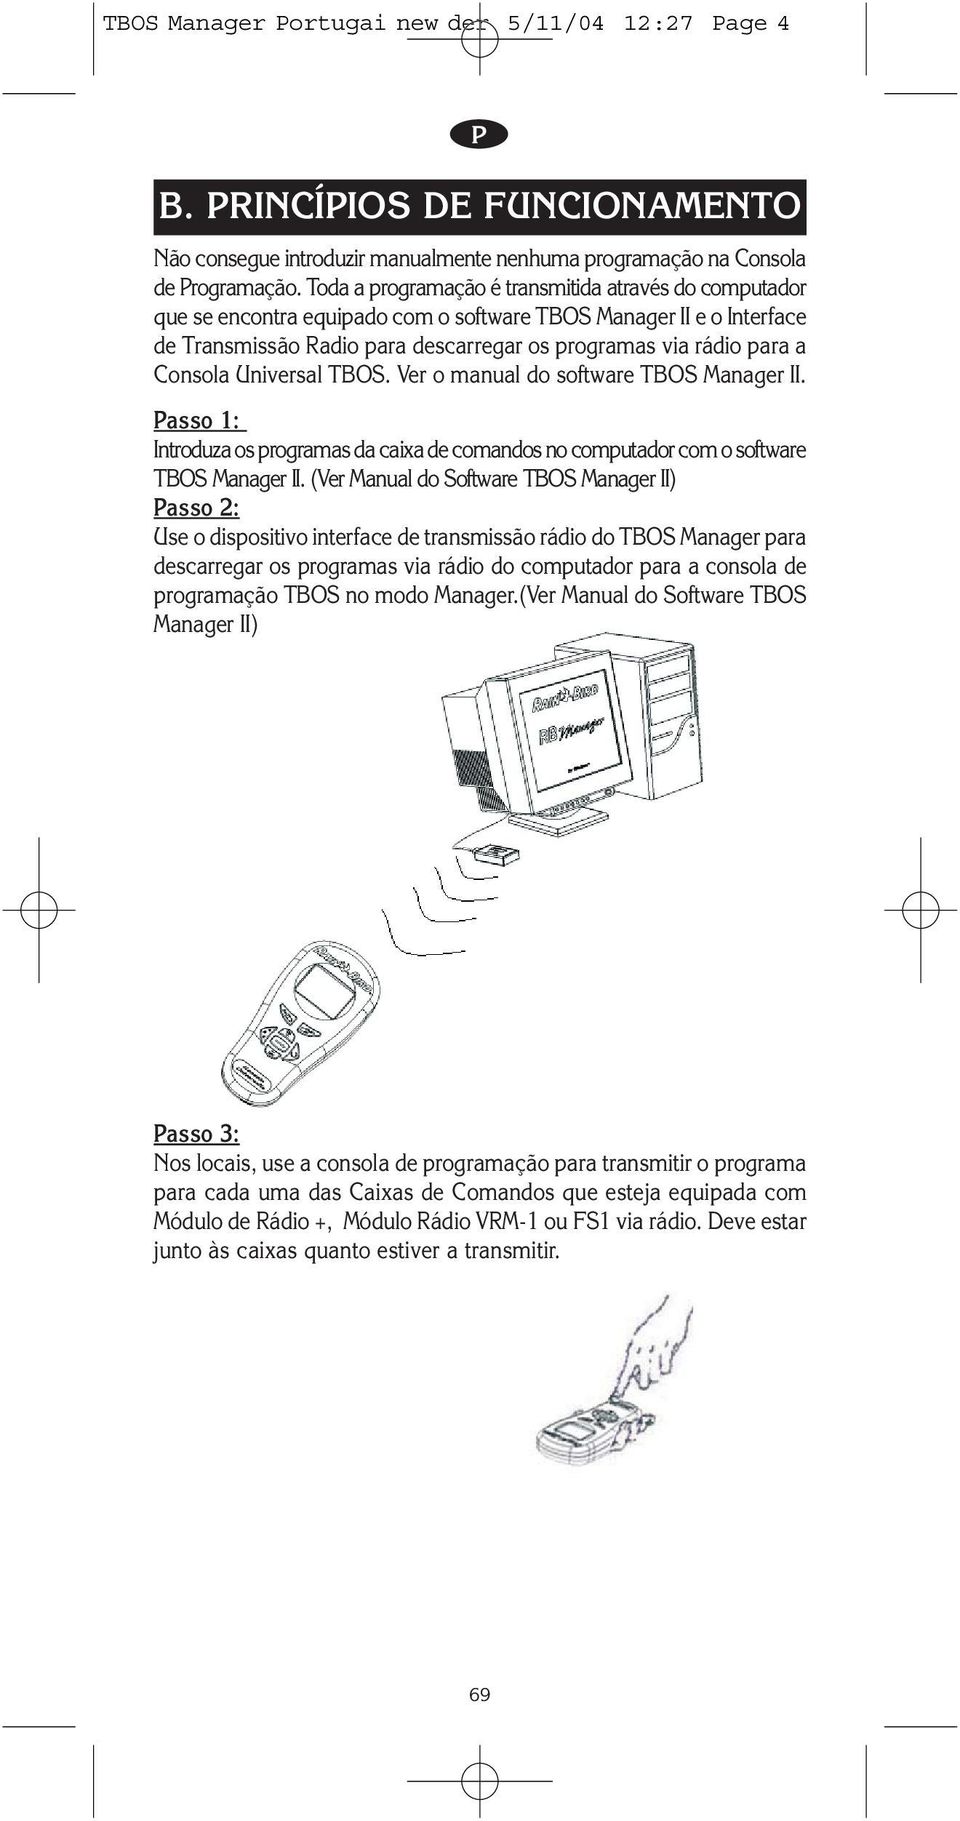 Consola Universal TBOS. Ver o manual do software TBOS Manager II. asso 1: Introduza os programas da caixa de comandos no computador com o software TBOS Manager II.